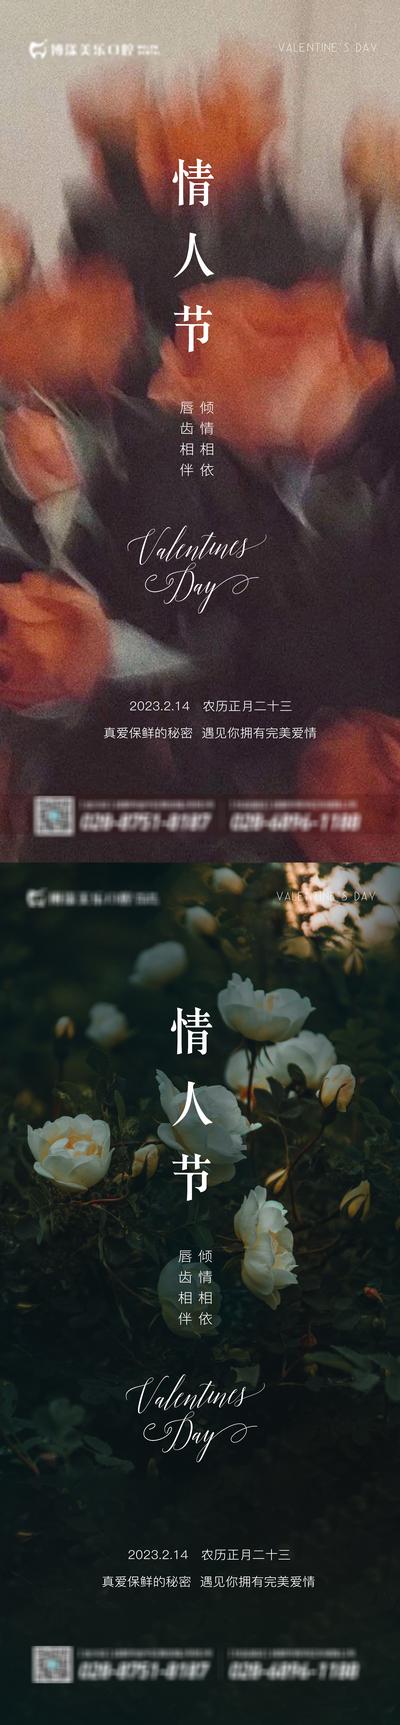 南门网 广告 海报 活动 节日 情人节 花 玫瑰